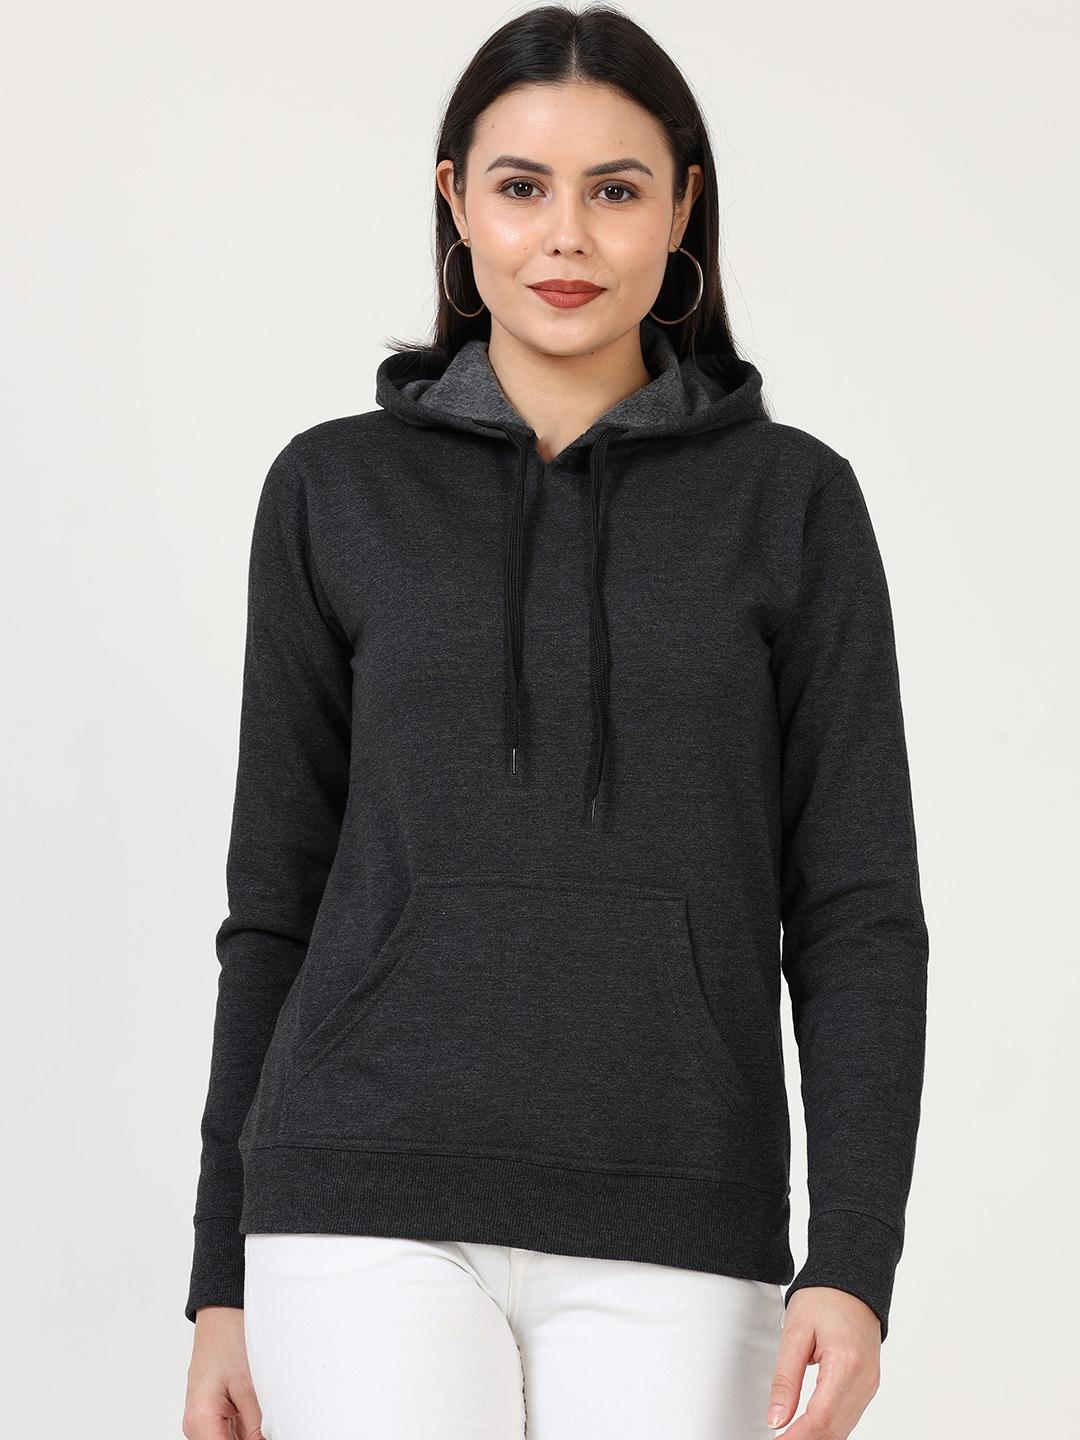 fleximaa-women-charcoal-hooded-sweatshirt